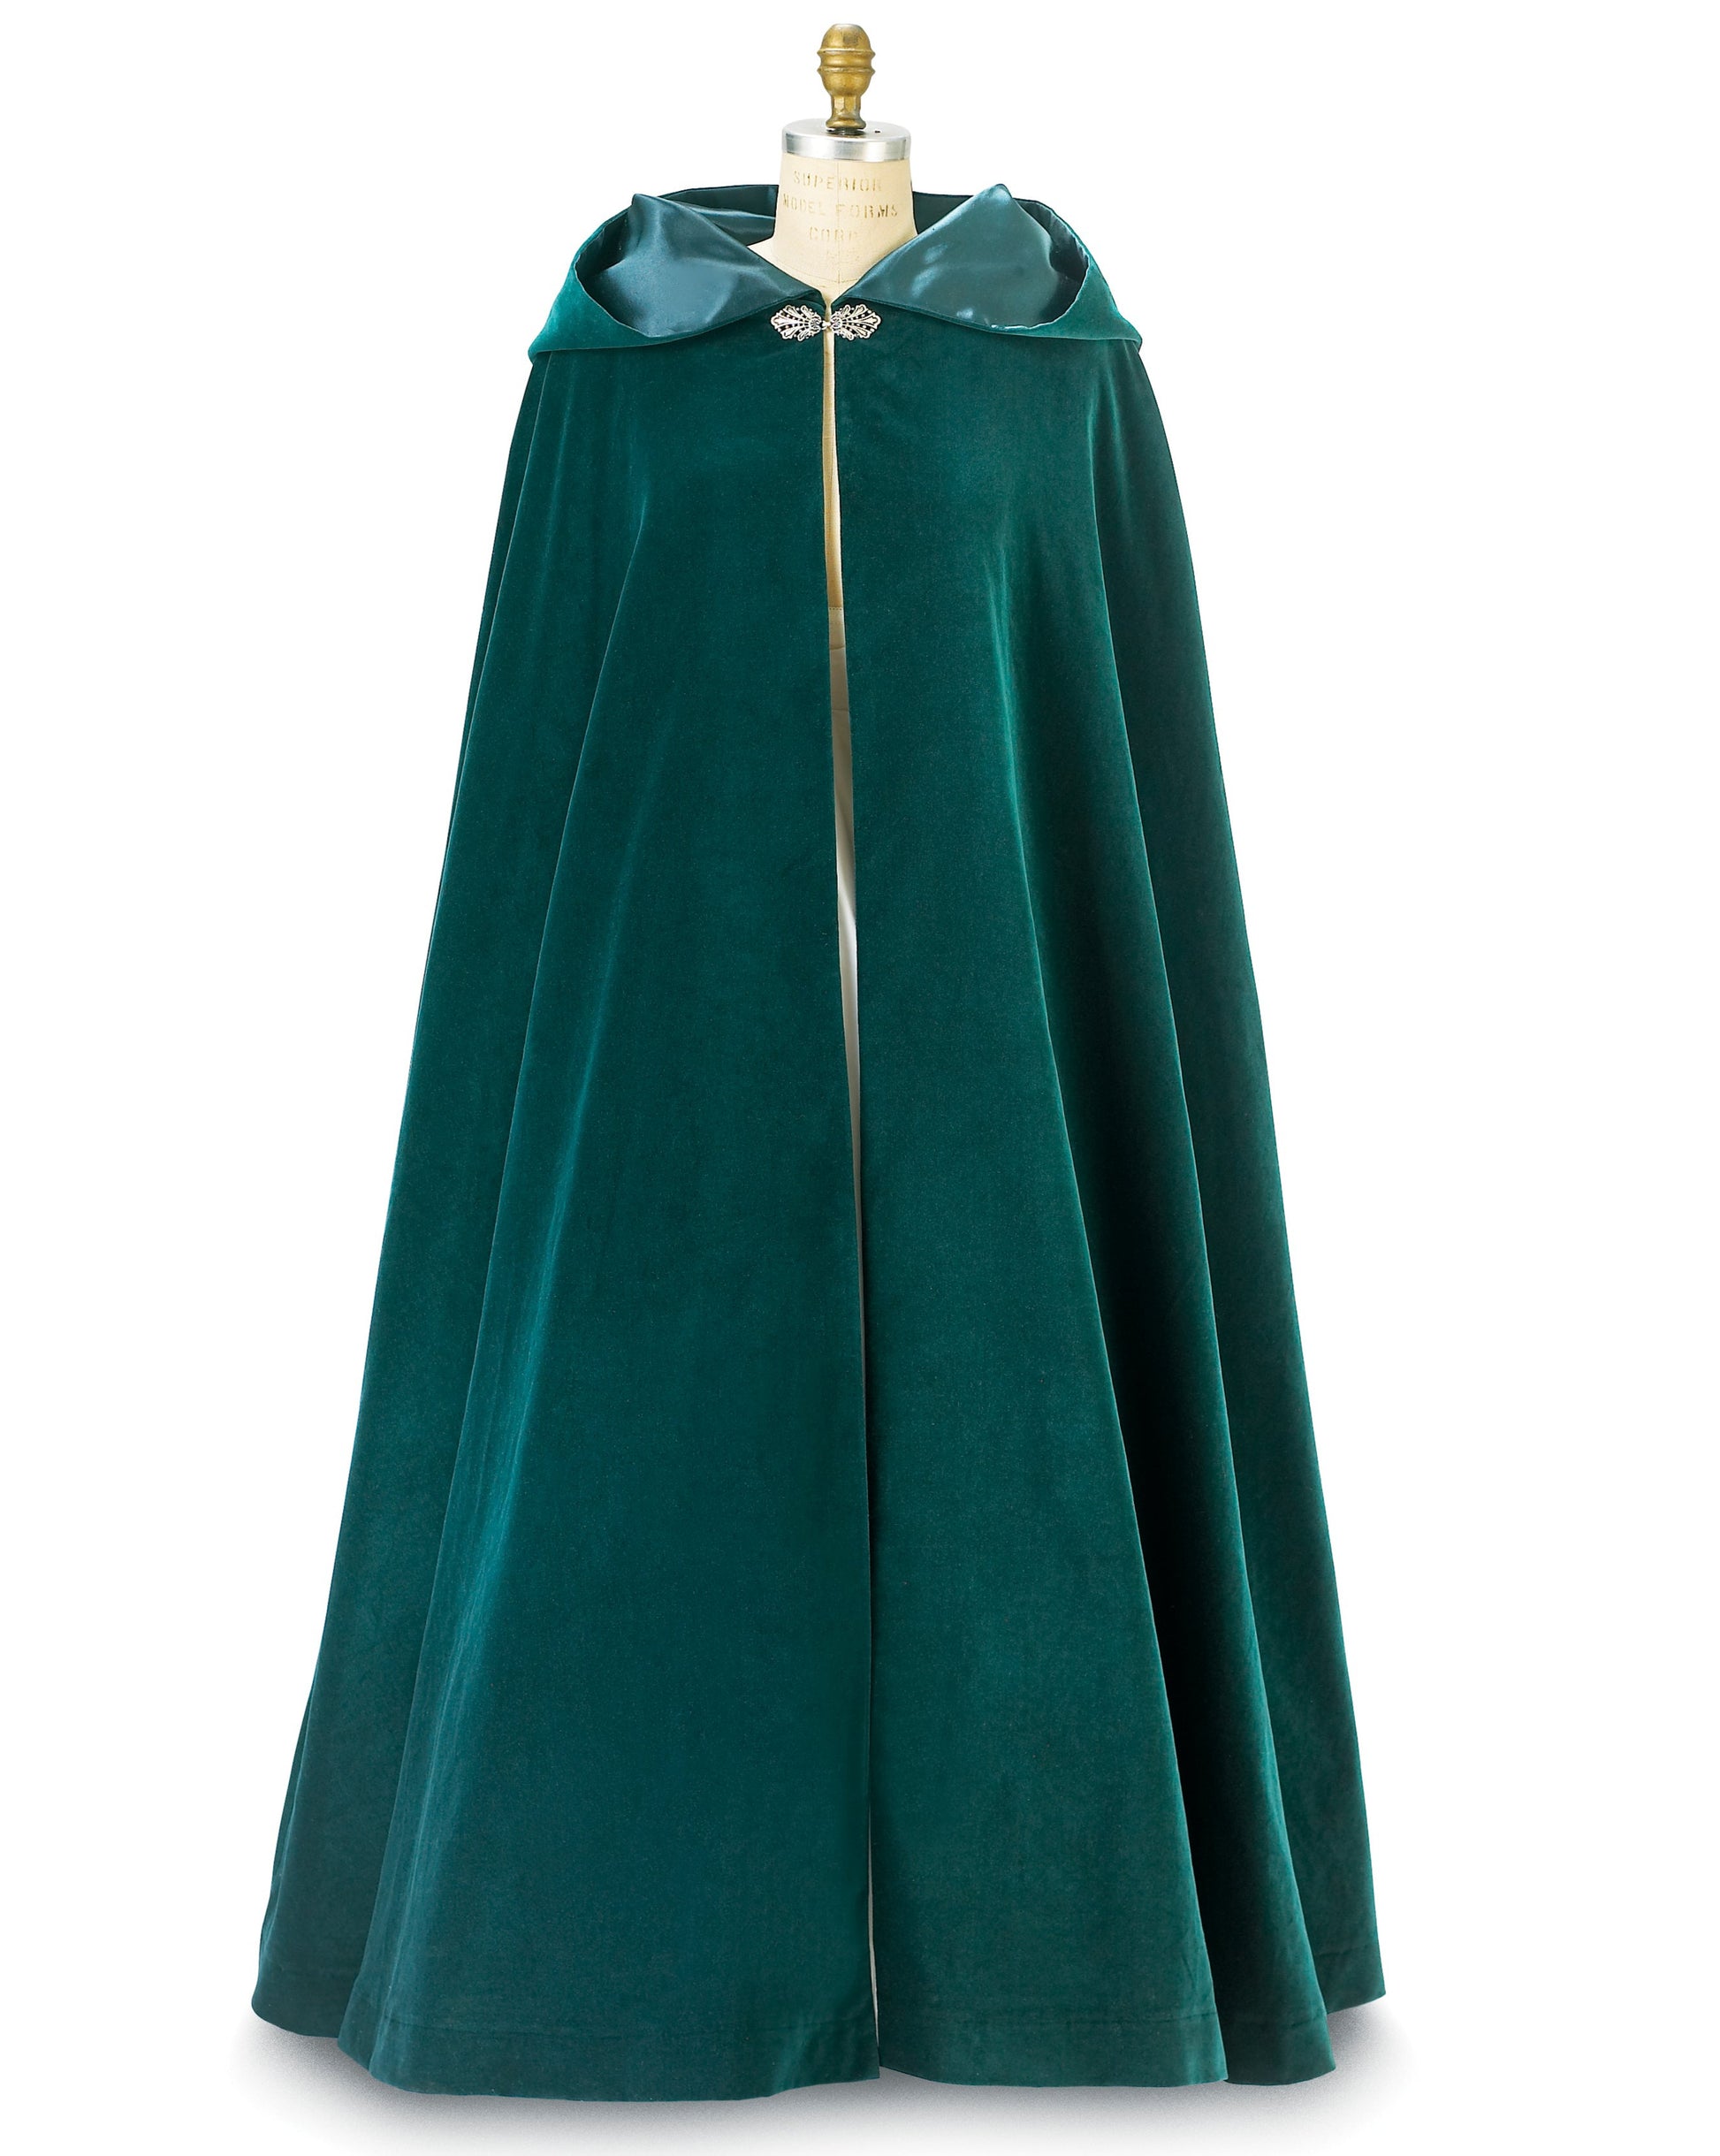 green velvet cloak